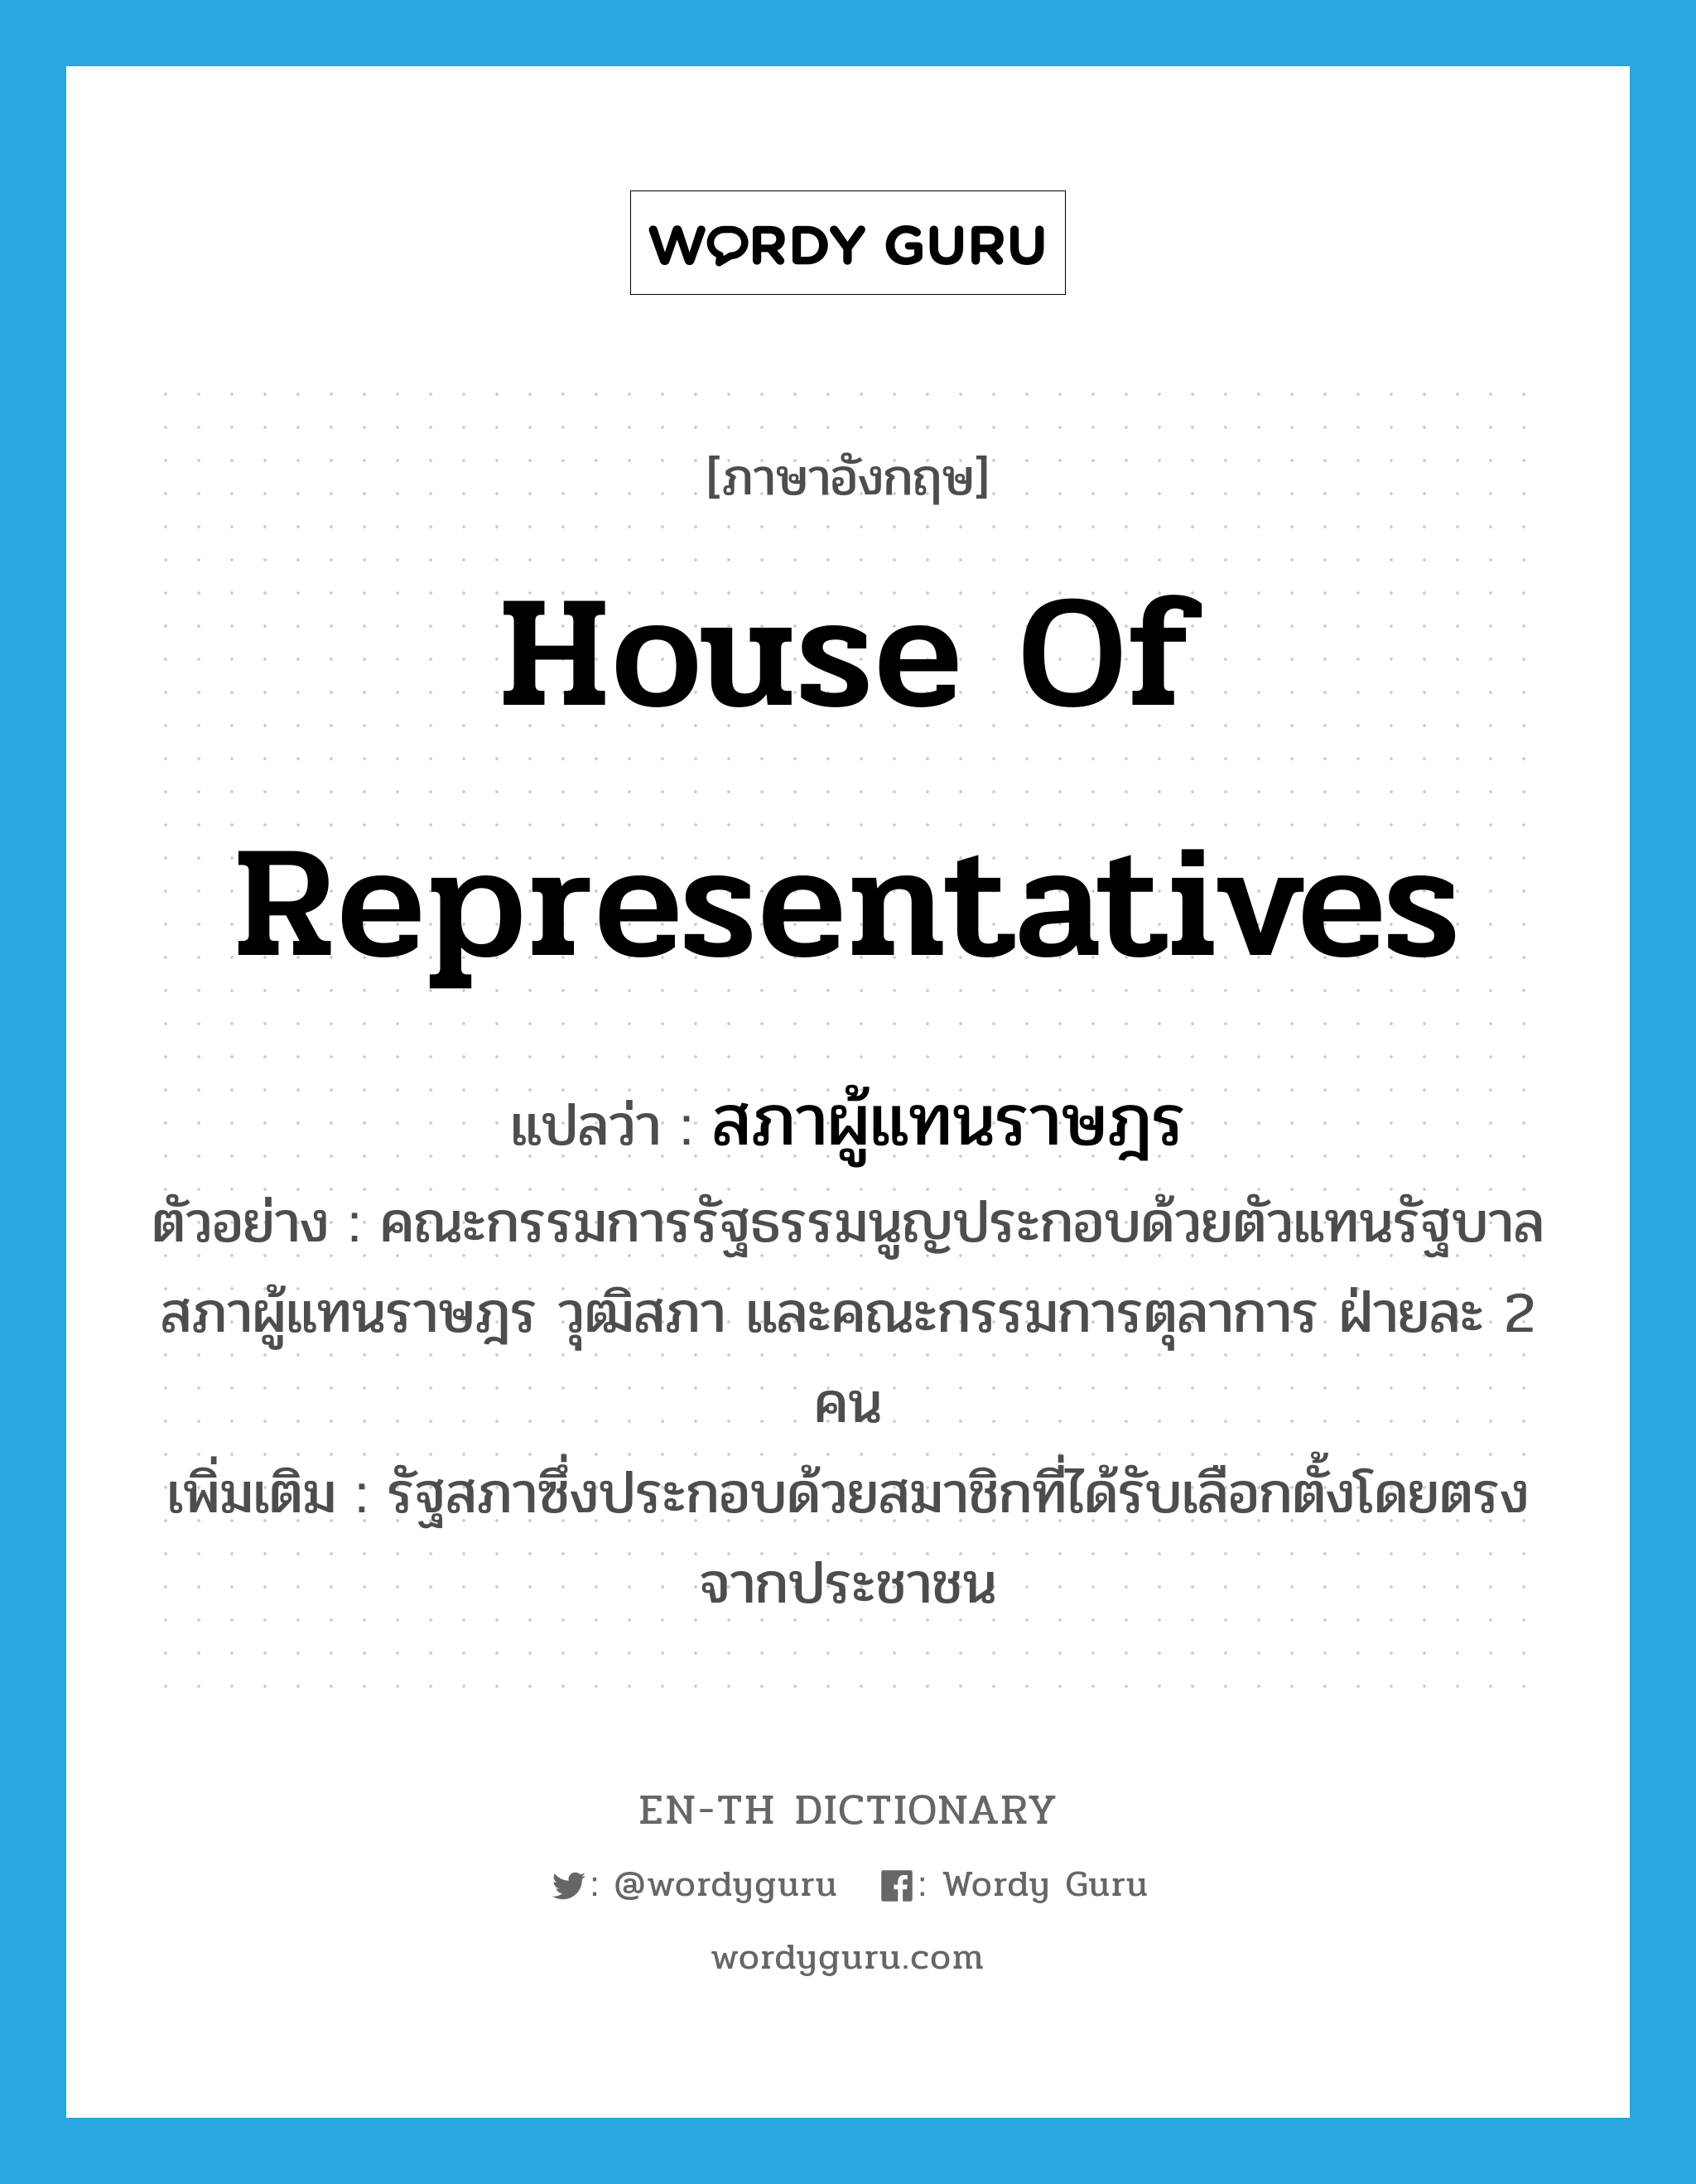 สภาผู้แทนราษฎร ภาษาอังกฤษ?, คำศัพท์ภาษาอังกฤษ สภาผู้แทนราษฎร แปลว่า House of Representatives ประเภท N ตัวอย่าง คณะกรรมการรัฐธรรมนูญประกอบด้วยตัวแทนรัฐบาล สภาผู้แทนราษฎร วุฒิสภา และคณะกรรมการตุลาการ ฝ่ายละ 2 คน เพิ่มเติม รัฐสภาซึ่งประกอบด้วยสมาชิกที่ได้รับเลือกตั้งโดยตรงจากประชาชน หมวด N